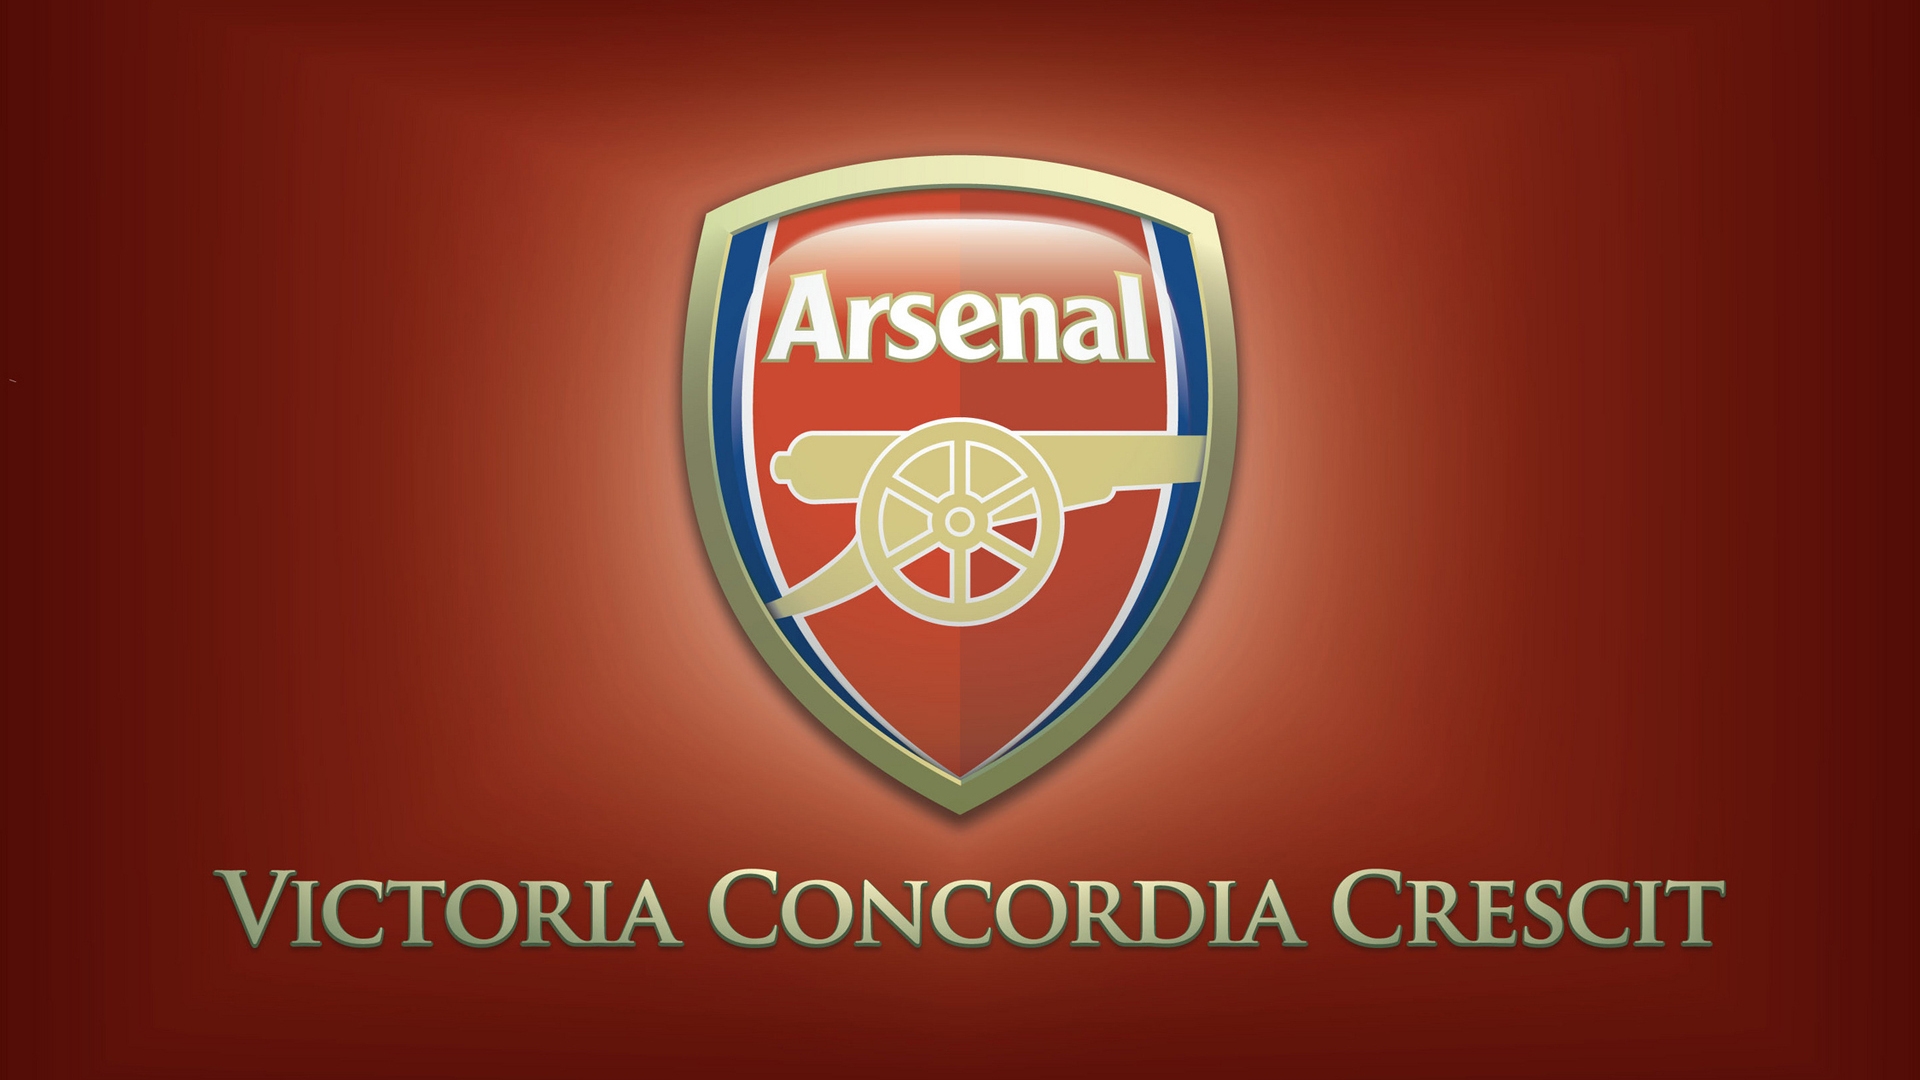 Arsenal Logo for 1920 x 1080 HDTV 1080p resolution